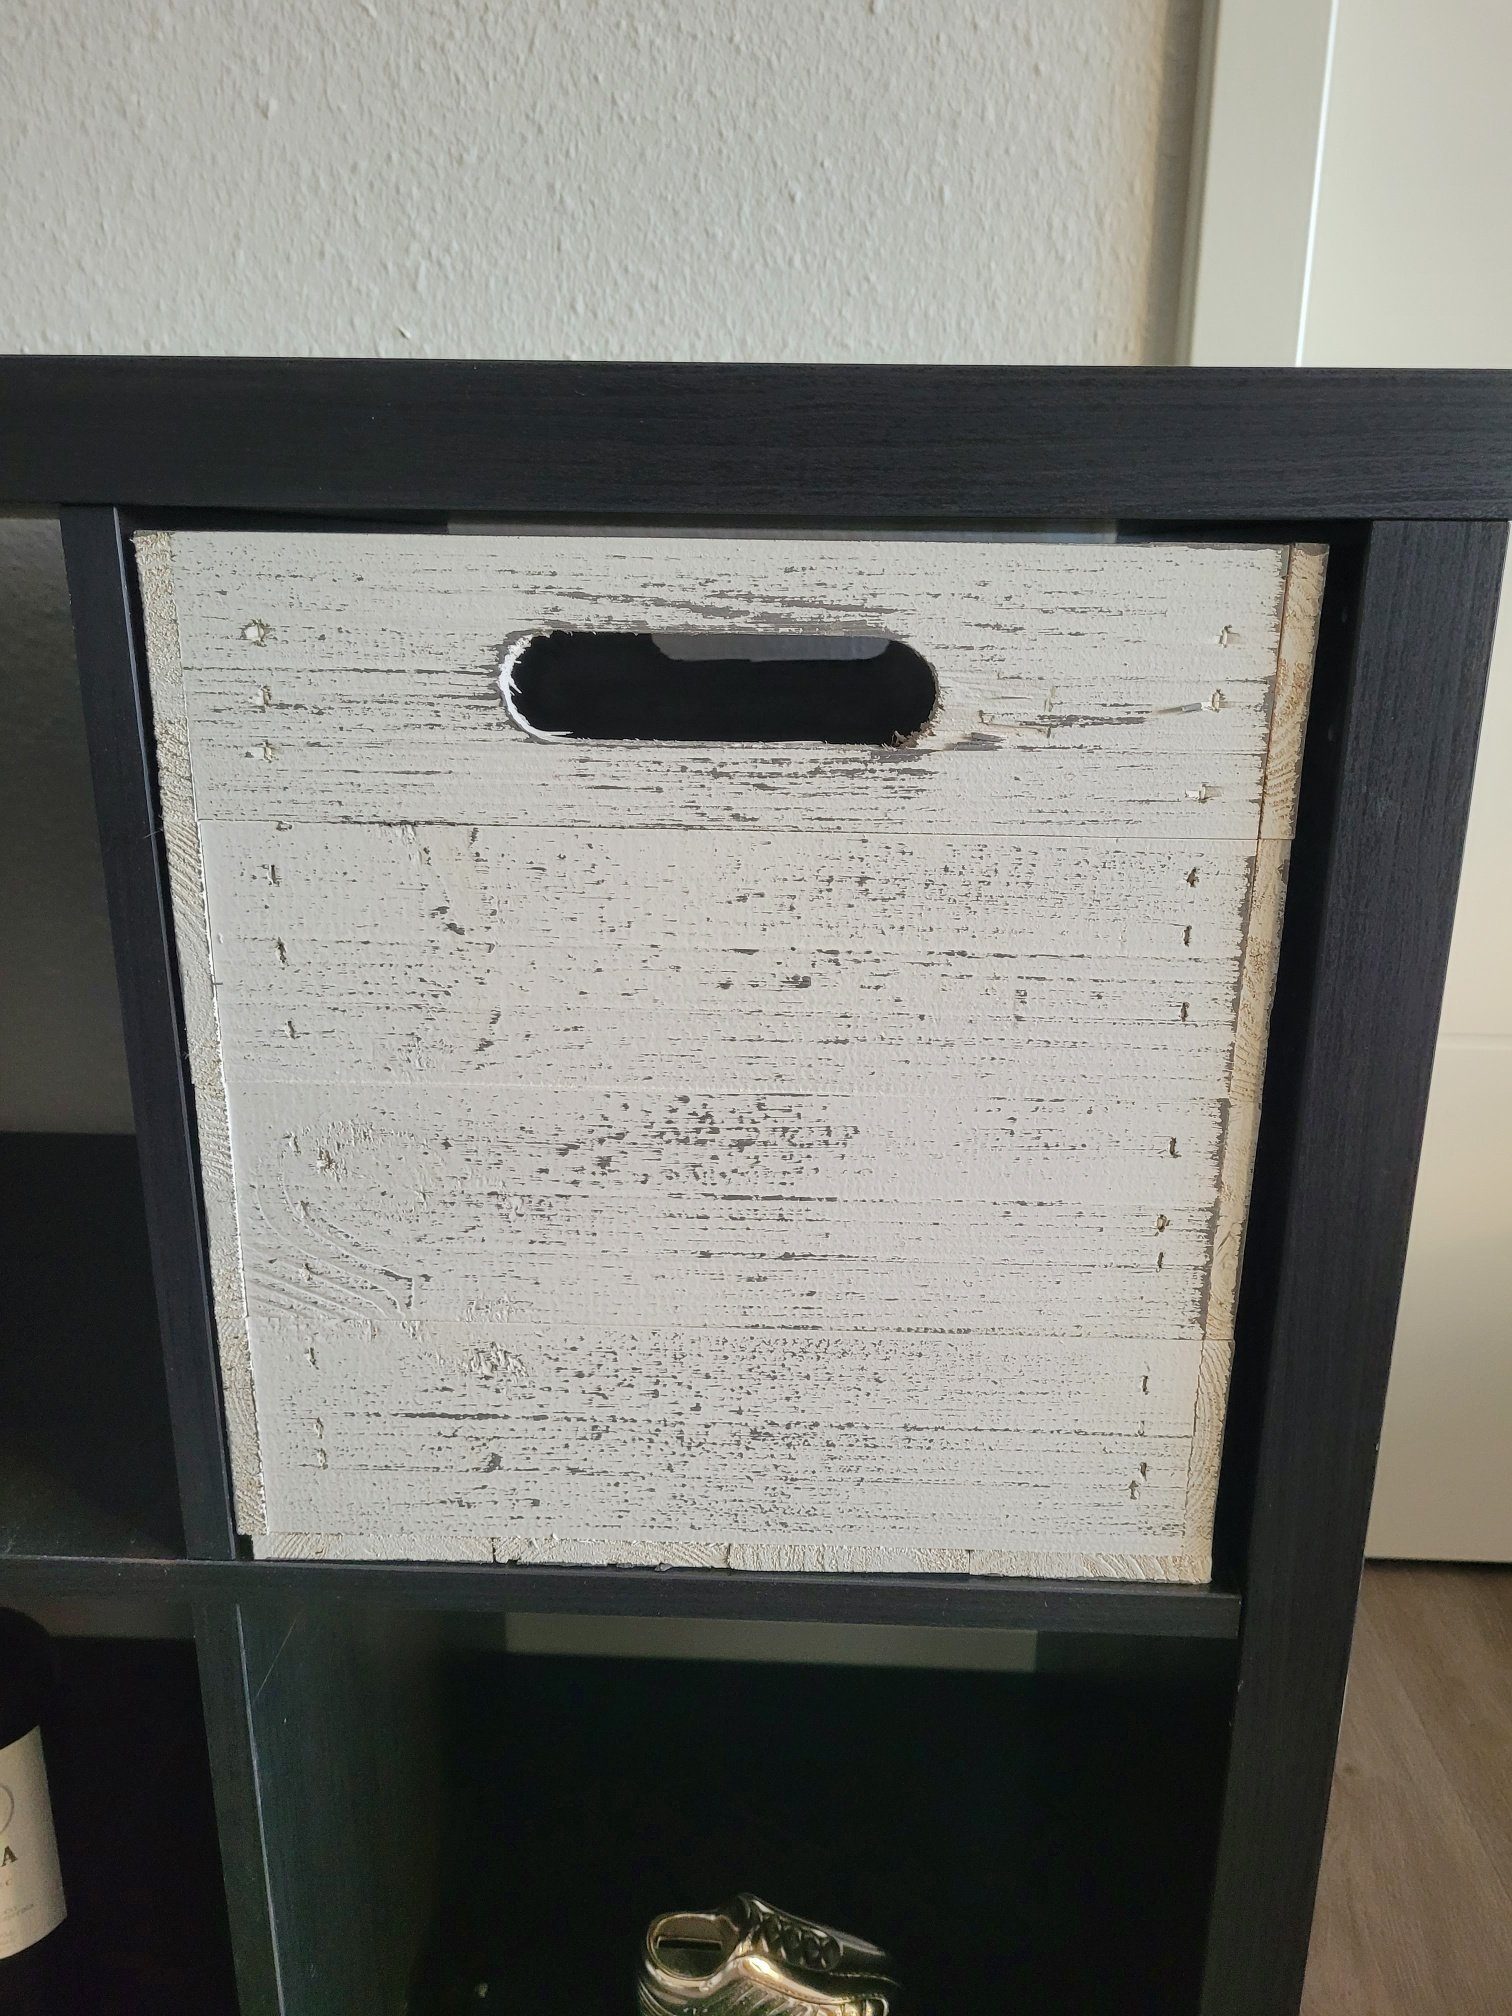 Kistenkolli Altes Land Allzweckkiste Holzbox Vintage Weiss Regalkiste passend für Ikea Kallax und Expeditre